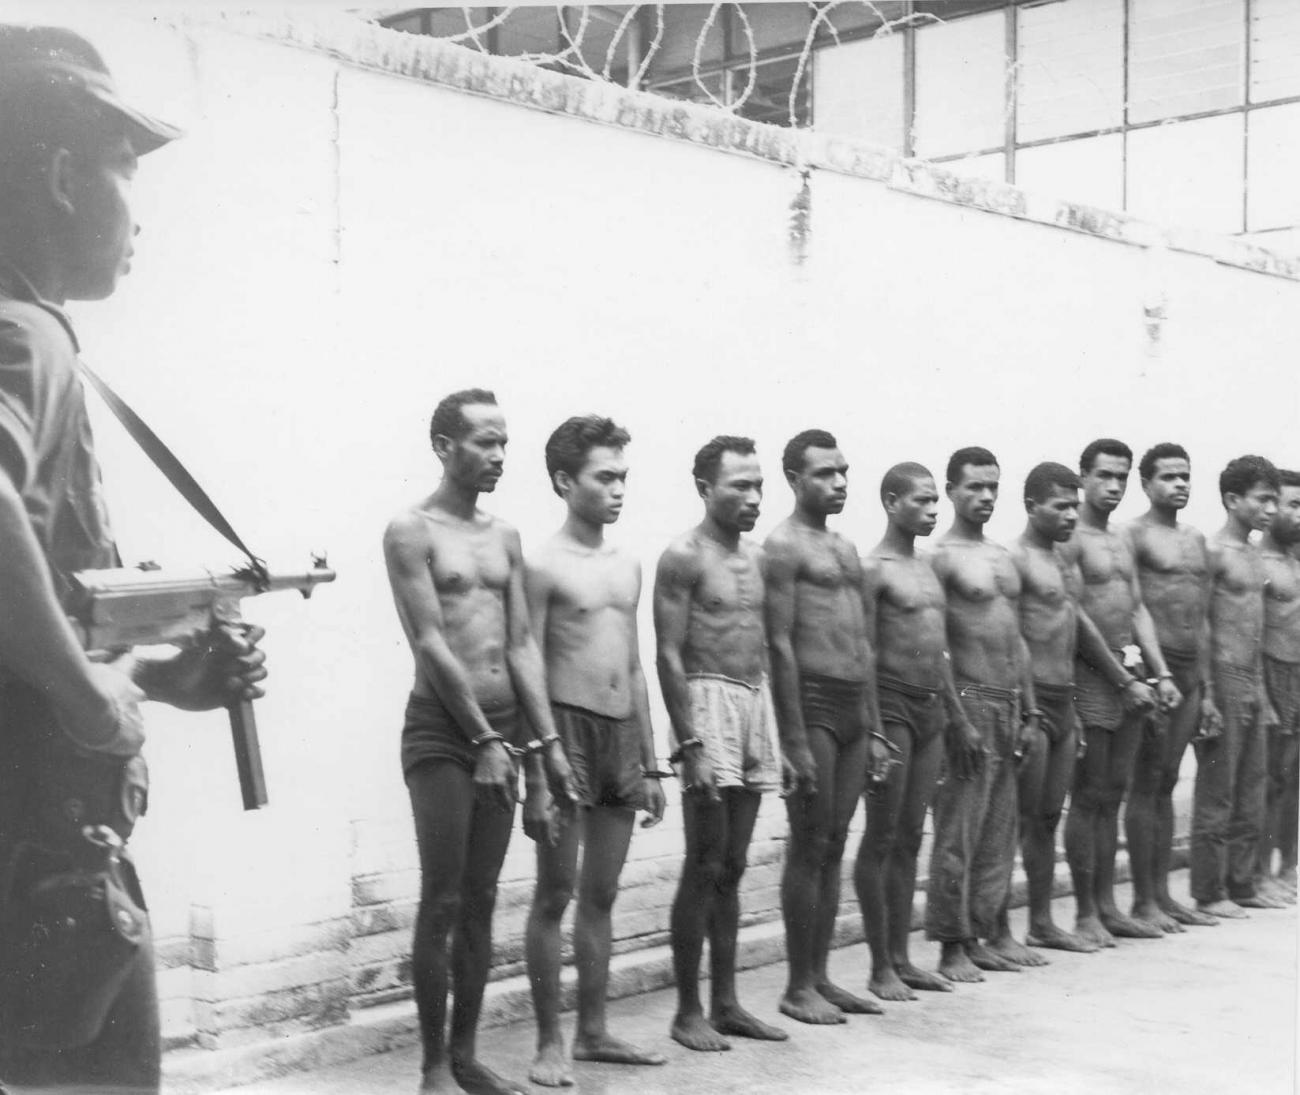 BD/66/356 - 
Gevangenen staan in rij voor inspectie
